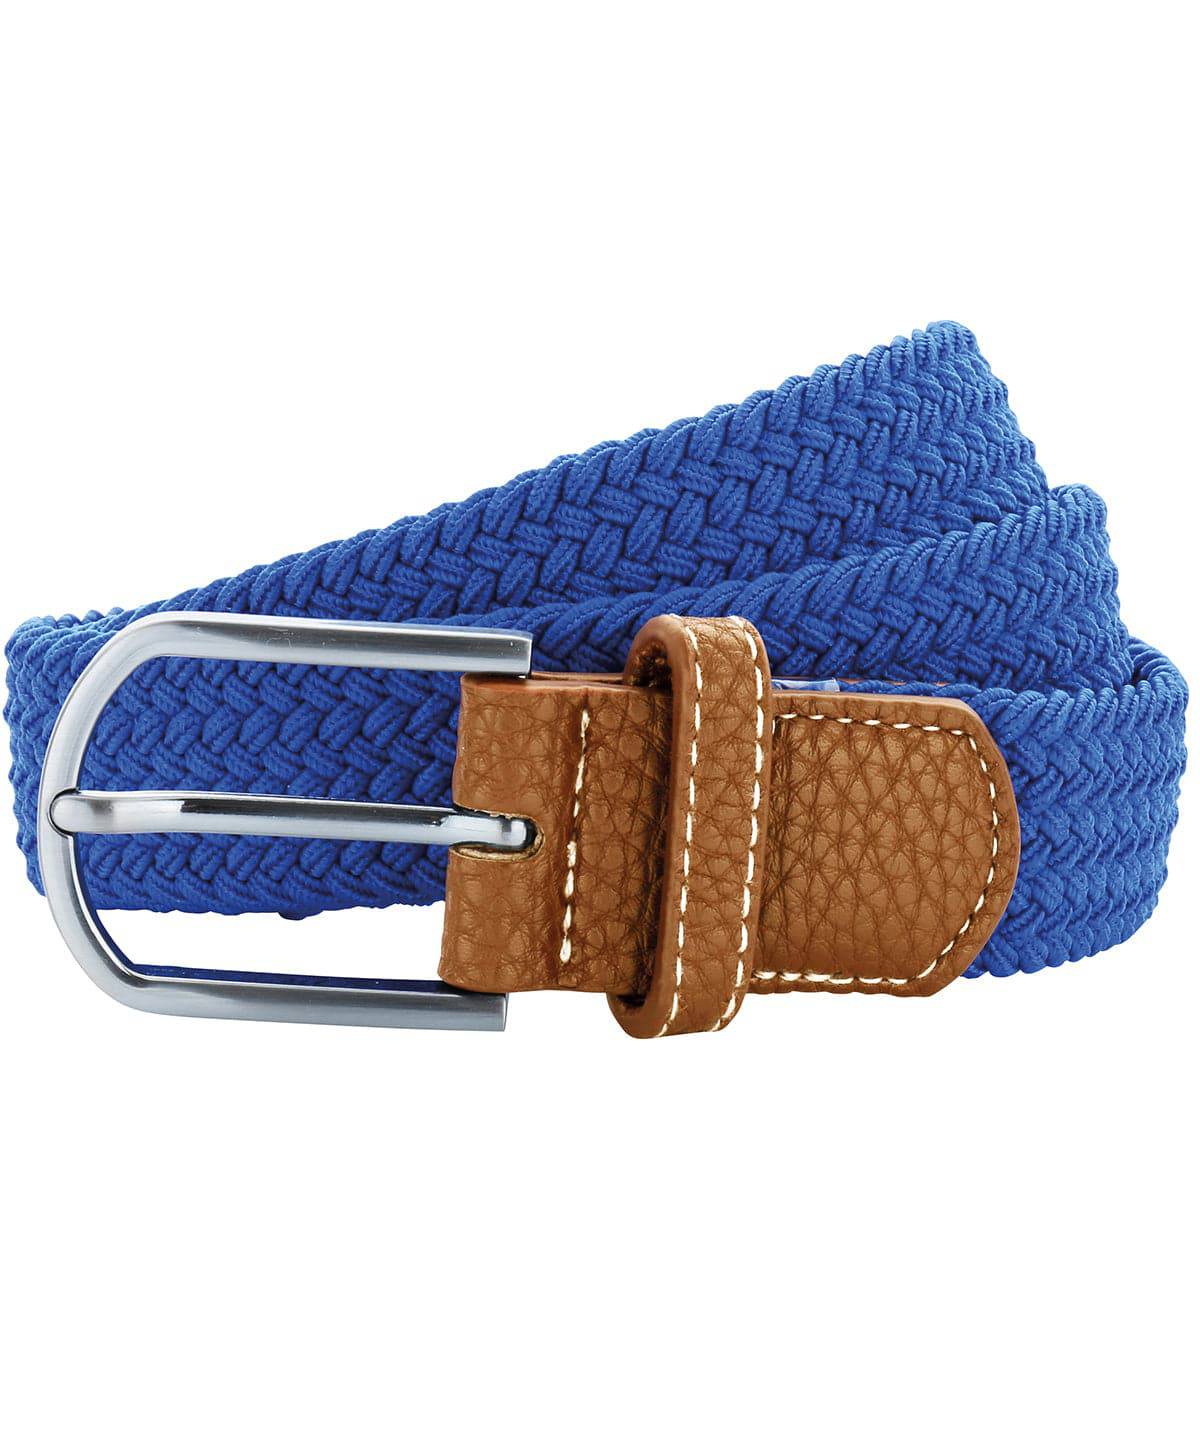 Royal - Braid stretch belt